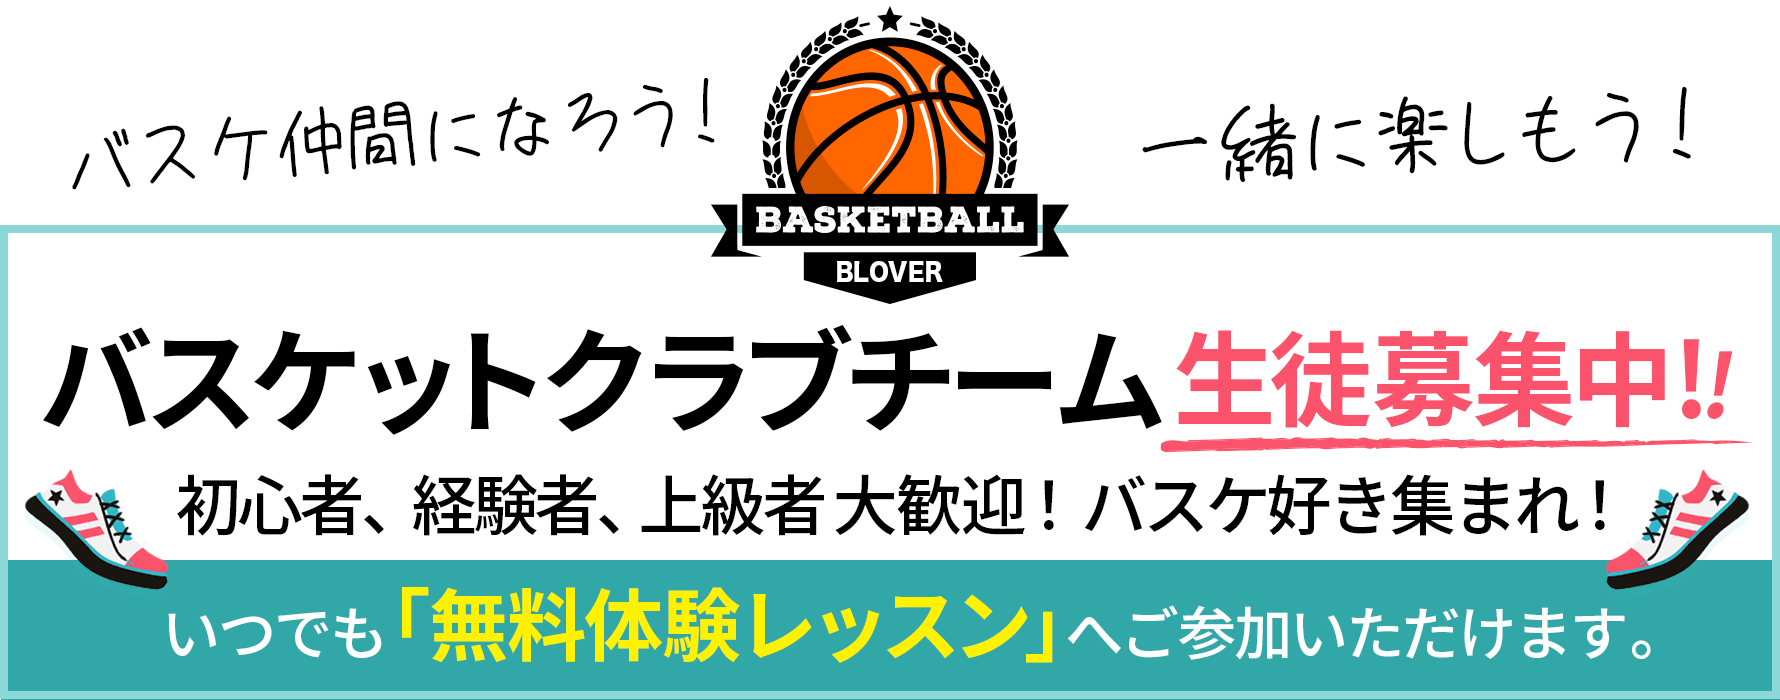 熊本の女子バスケットボールクラブ生徒募集中